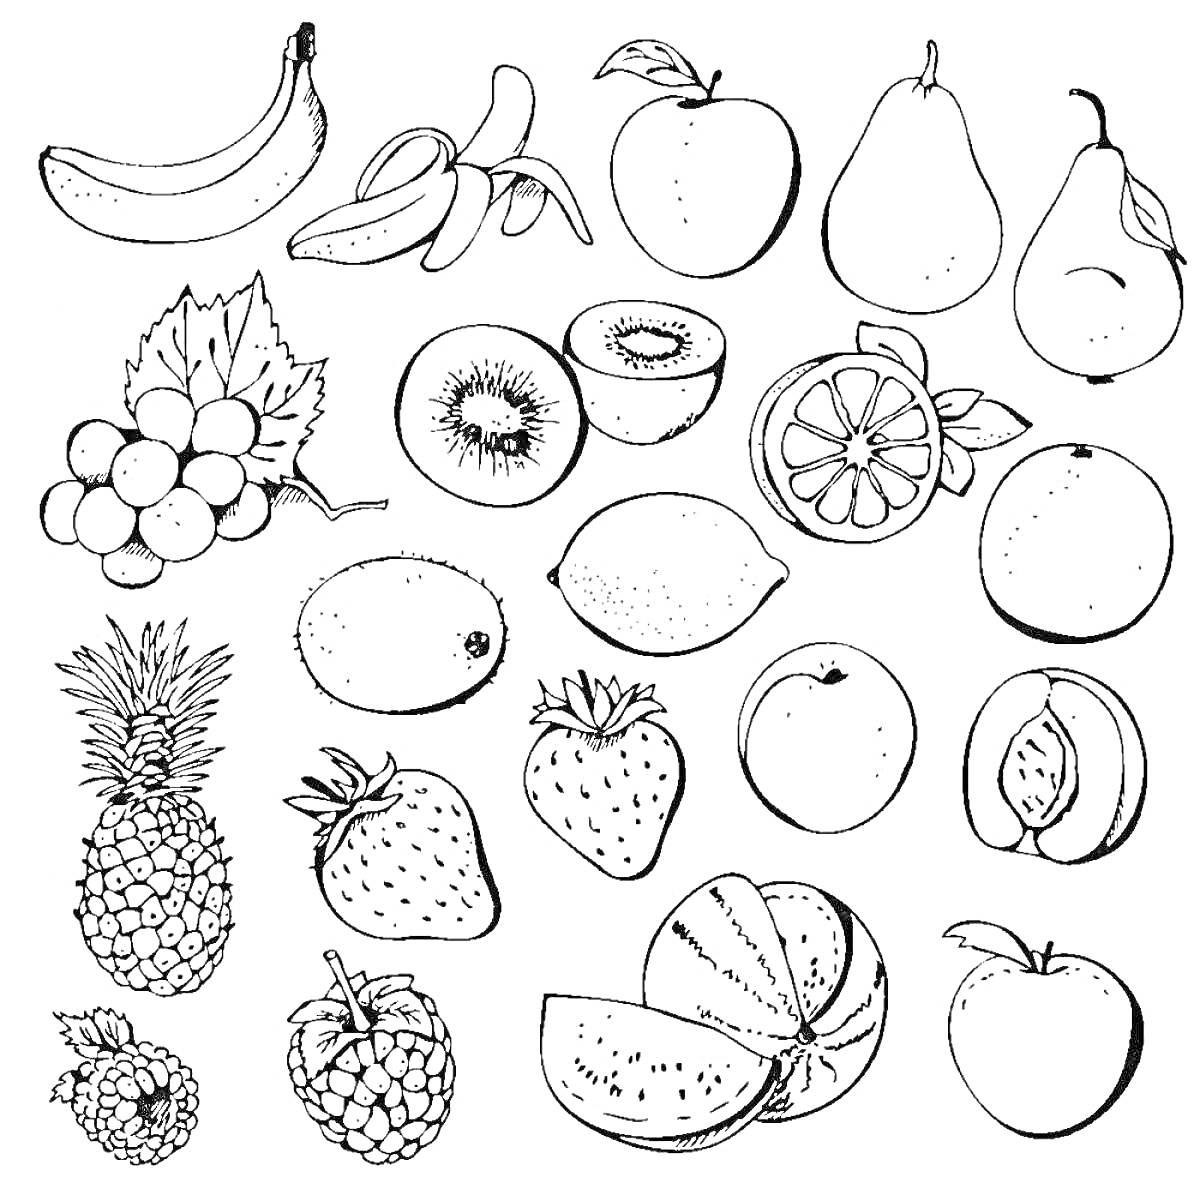 Раскраска Бананы, яблоко, груша, виноград, киви, лимон, апельсин, ананас, клубника, малина, арбуз, слива, персик